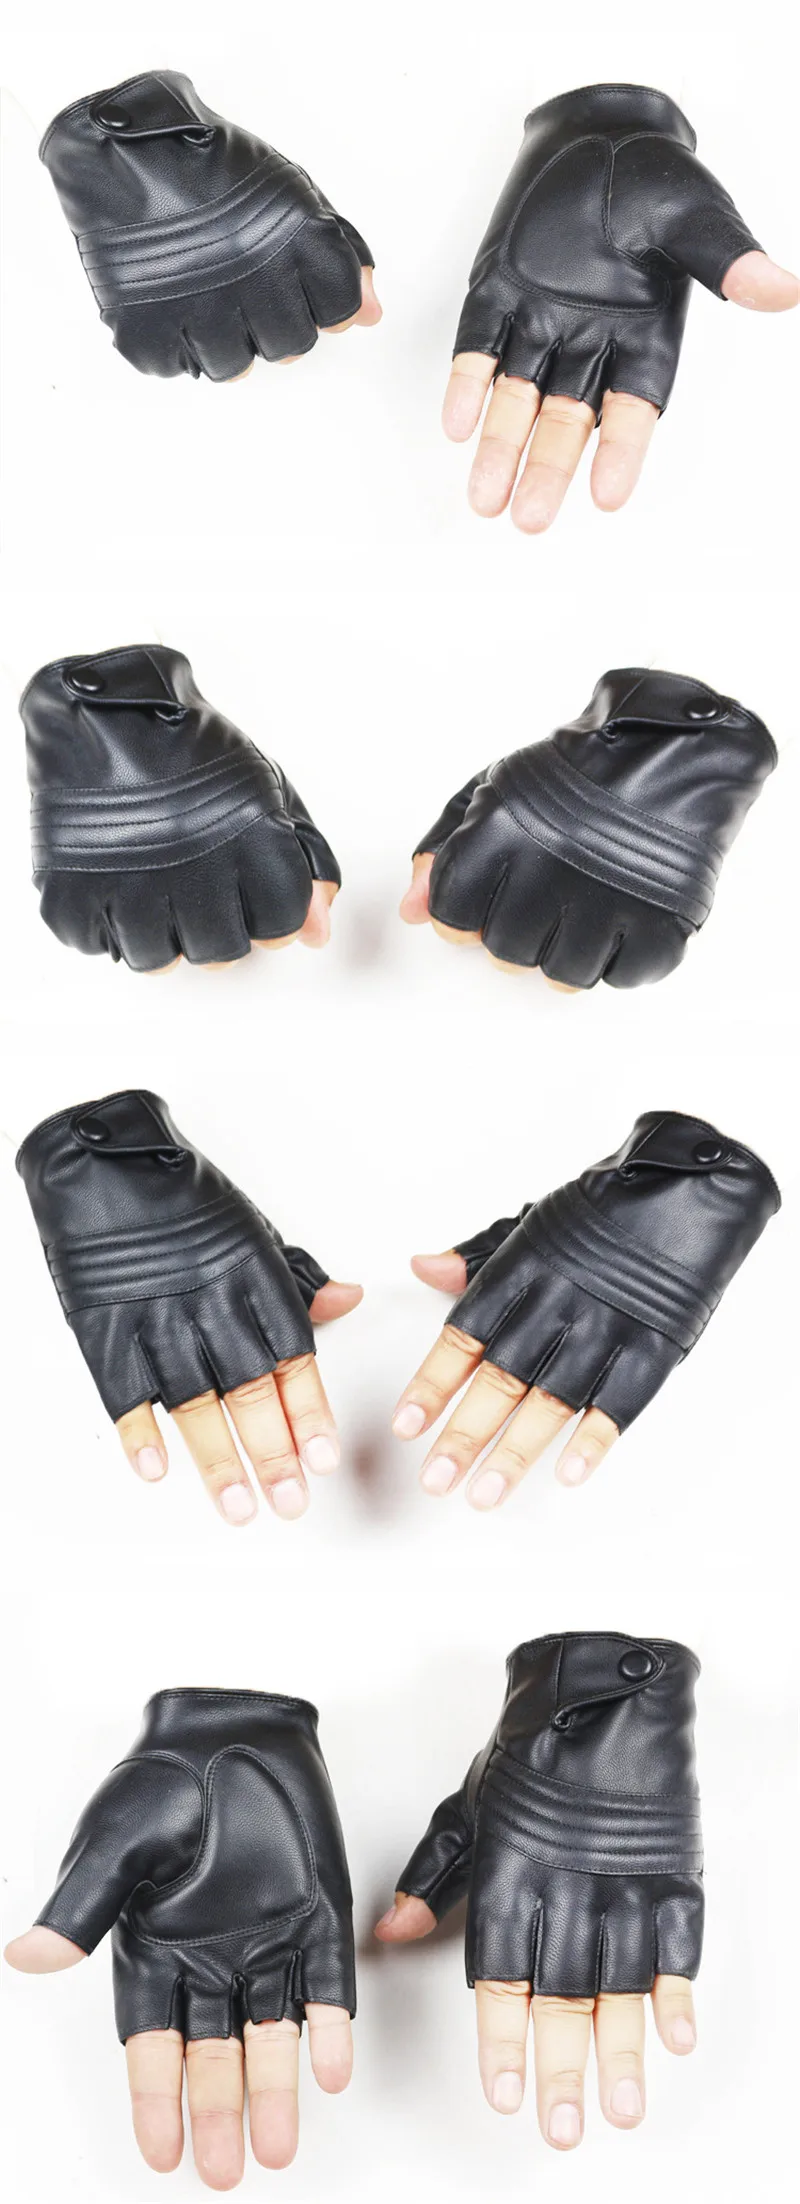 WarBLade новые стильные мужские кожаные перчатки для вождения, Перчатки для фитнеса, тактические перчатки с полупальцами, черные Guantes Luva R223